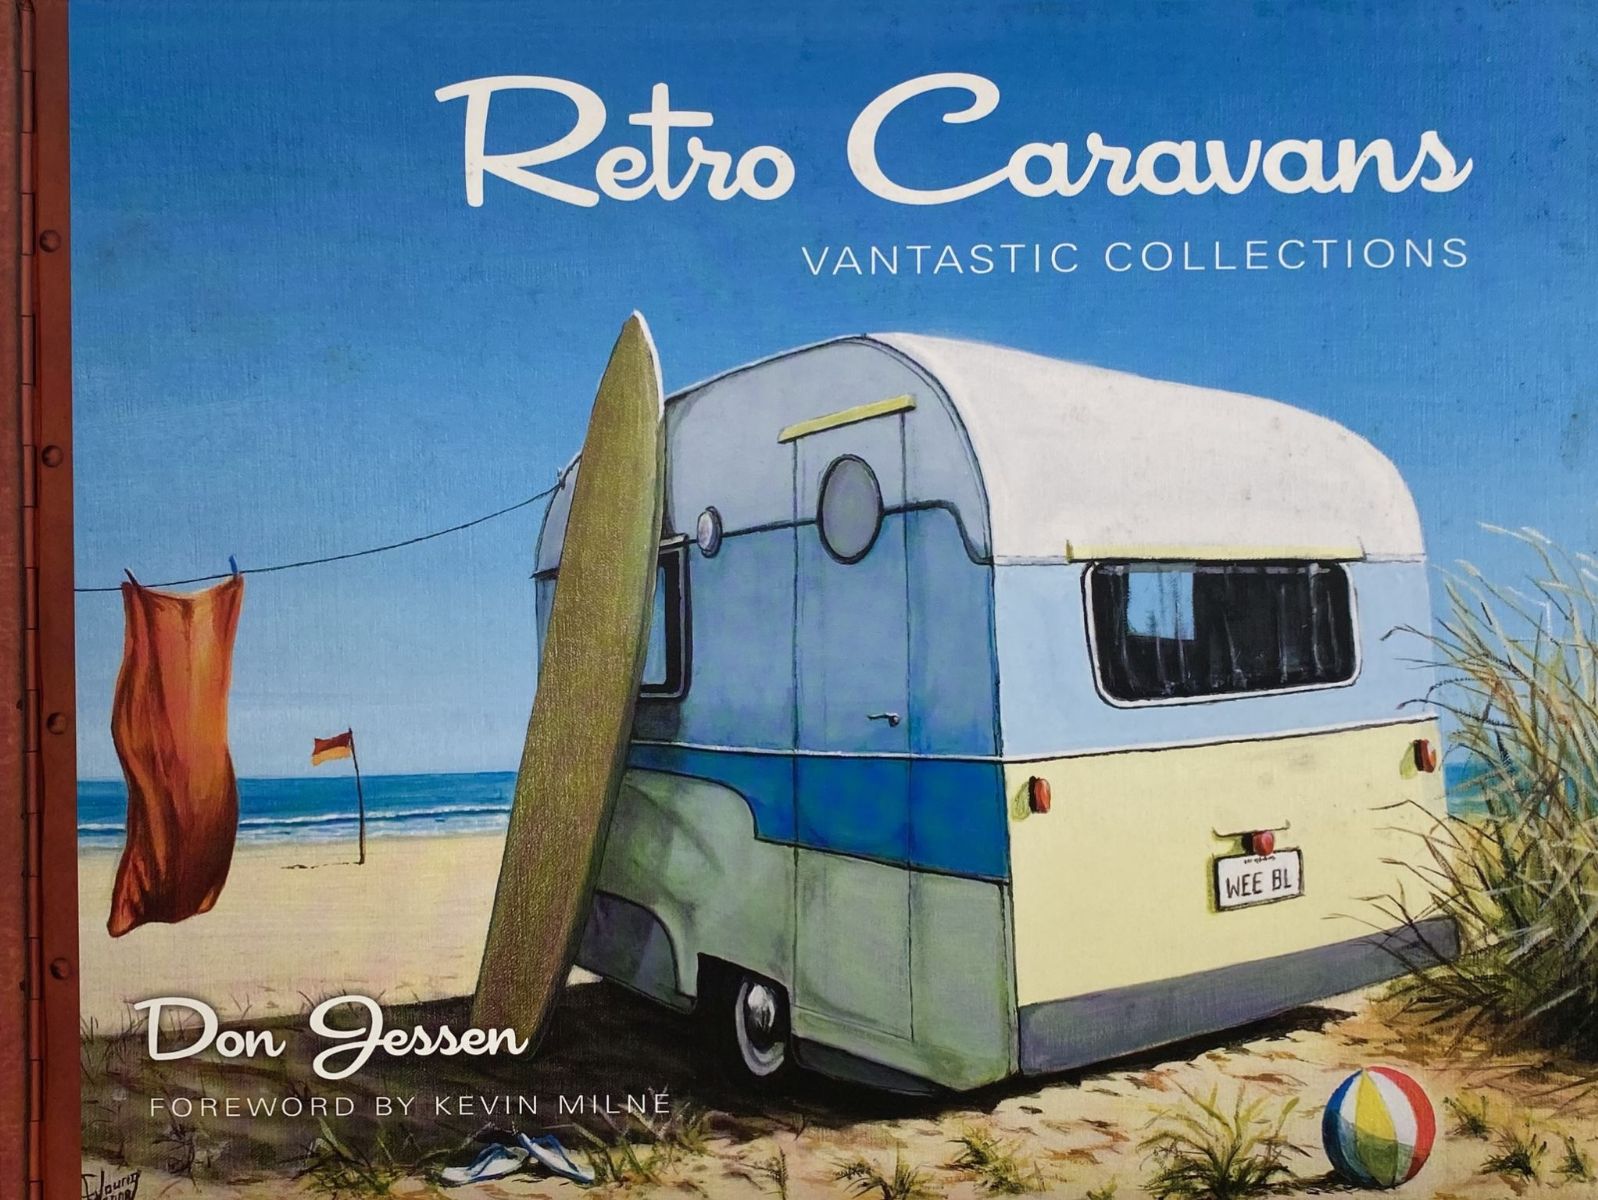 RETRO CARAVANS: Vantastic Collections